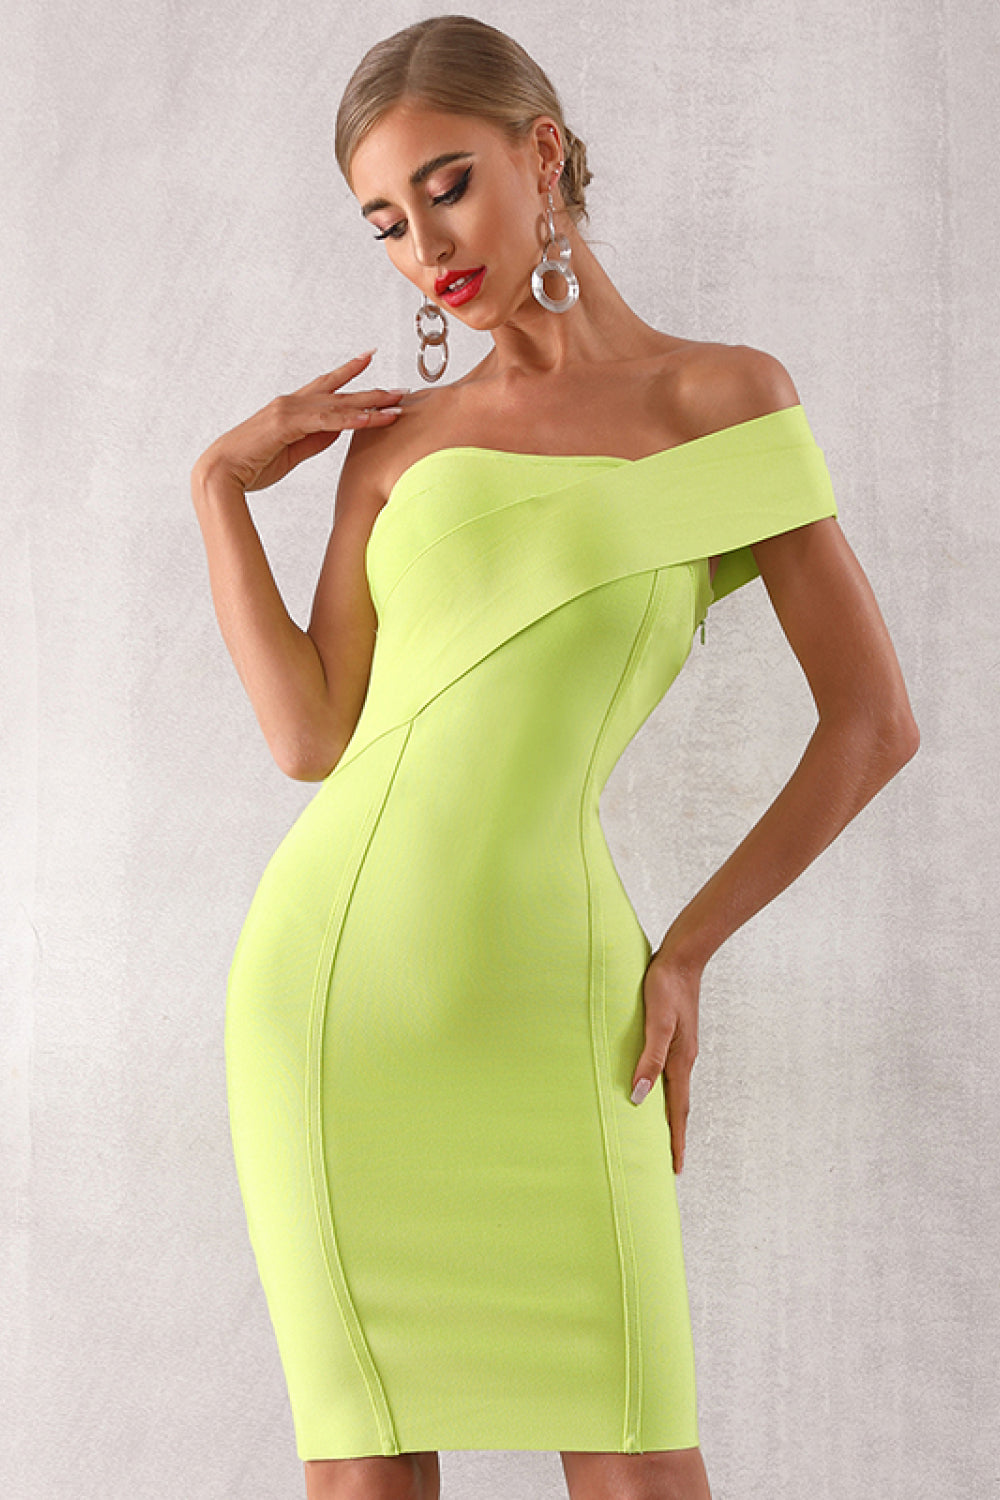 Solid Color One Shoulder Dress Solid Color One Shoulder Dress - M&R CORNERDresses Trendsi